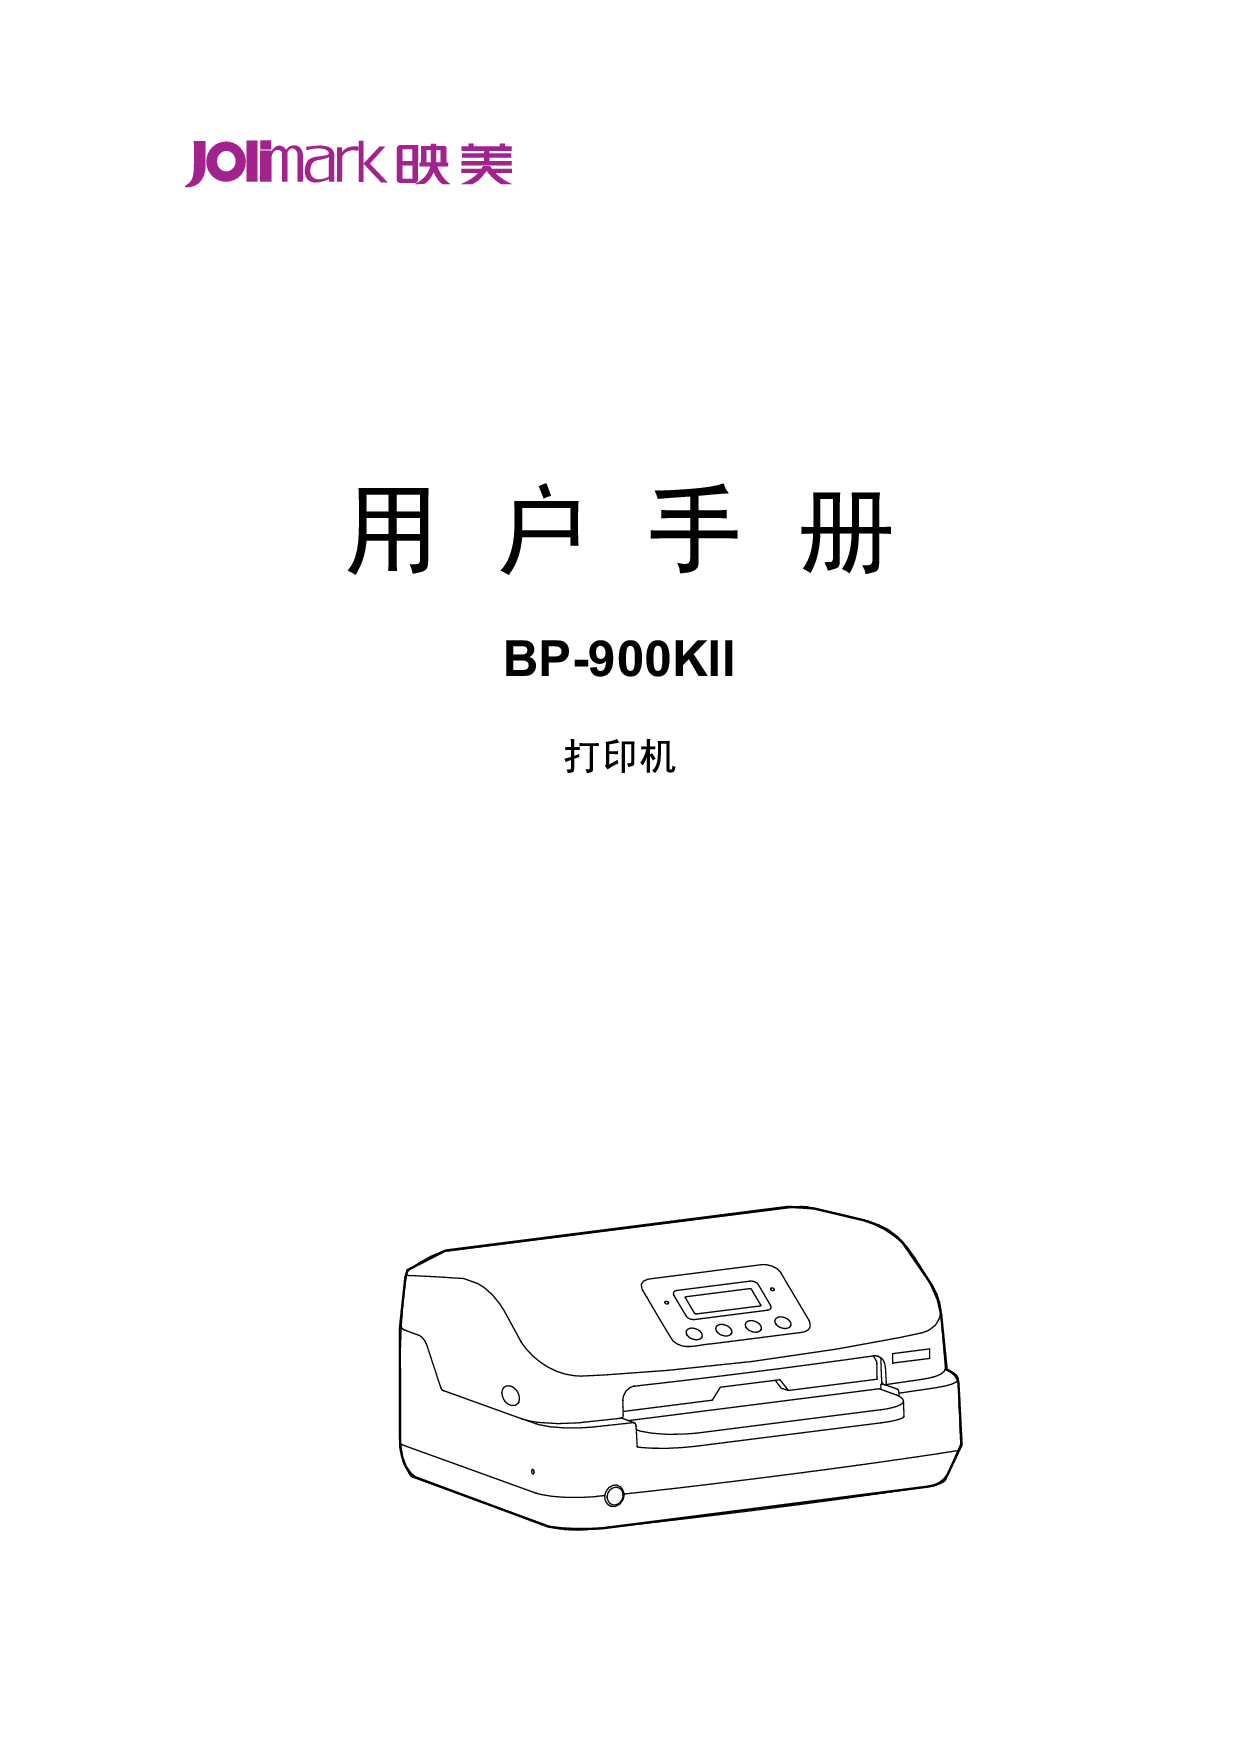 映美 Jolimark BP-900KII 用户手册 封面